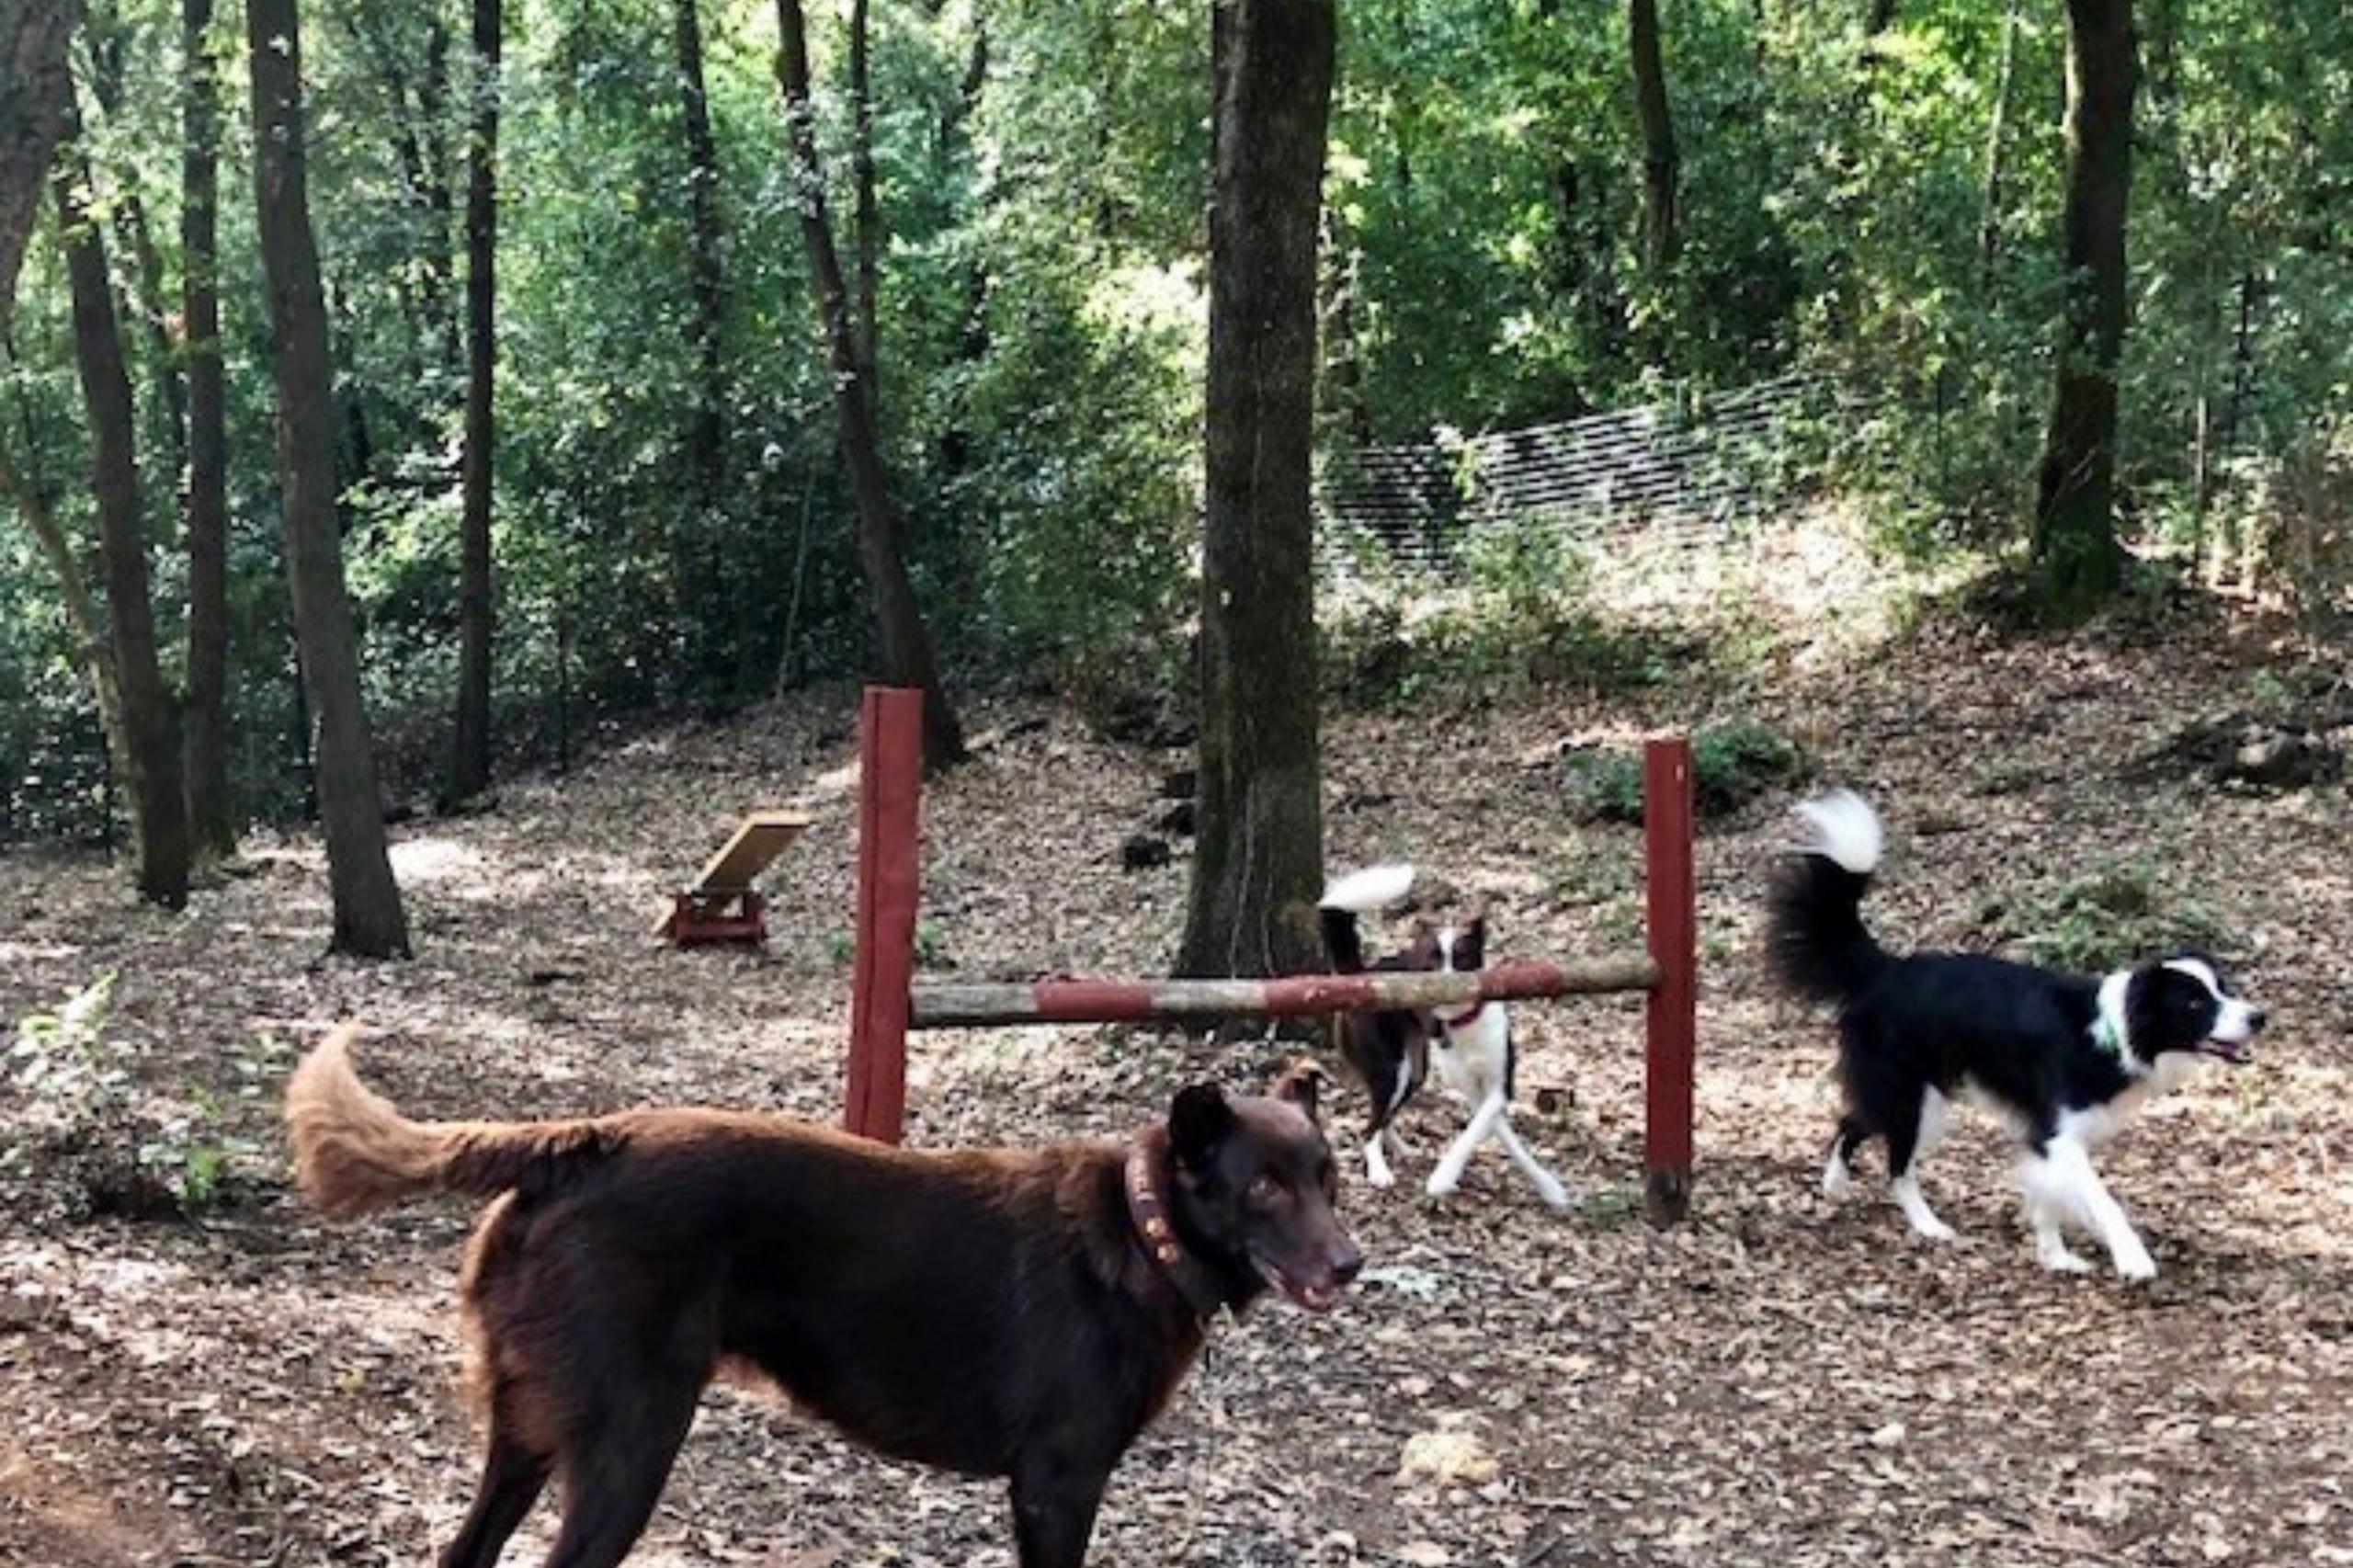 Für die Hunde sind auf dem Agility-Parcours des Campings Hindernisse und Wippen aufgestellt. 